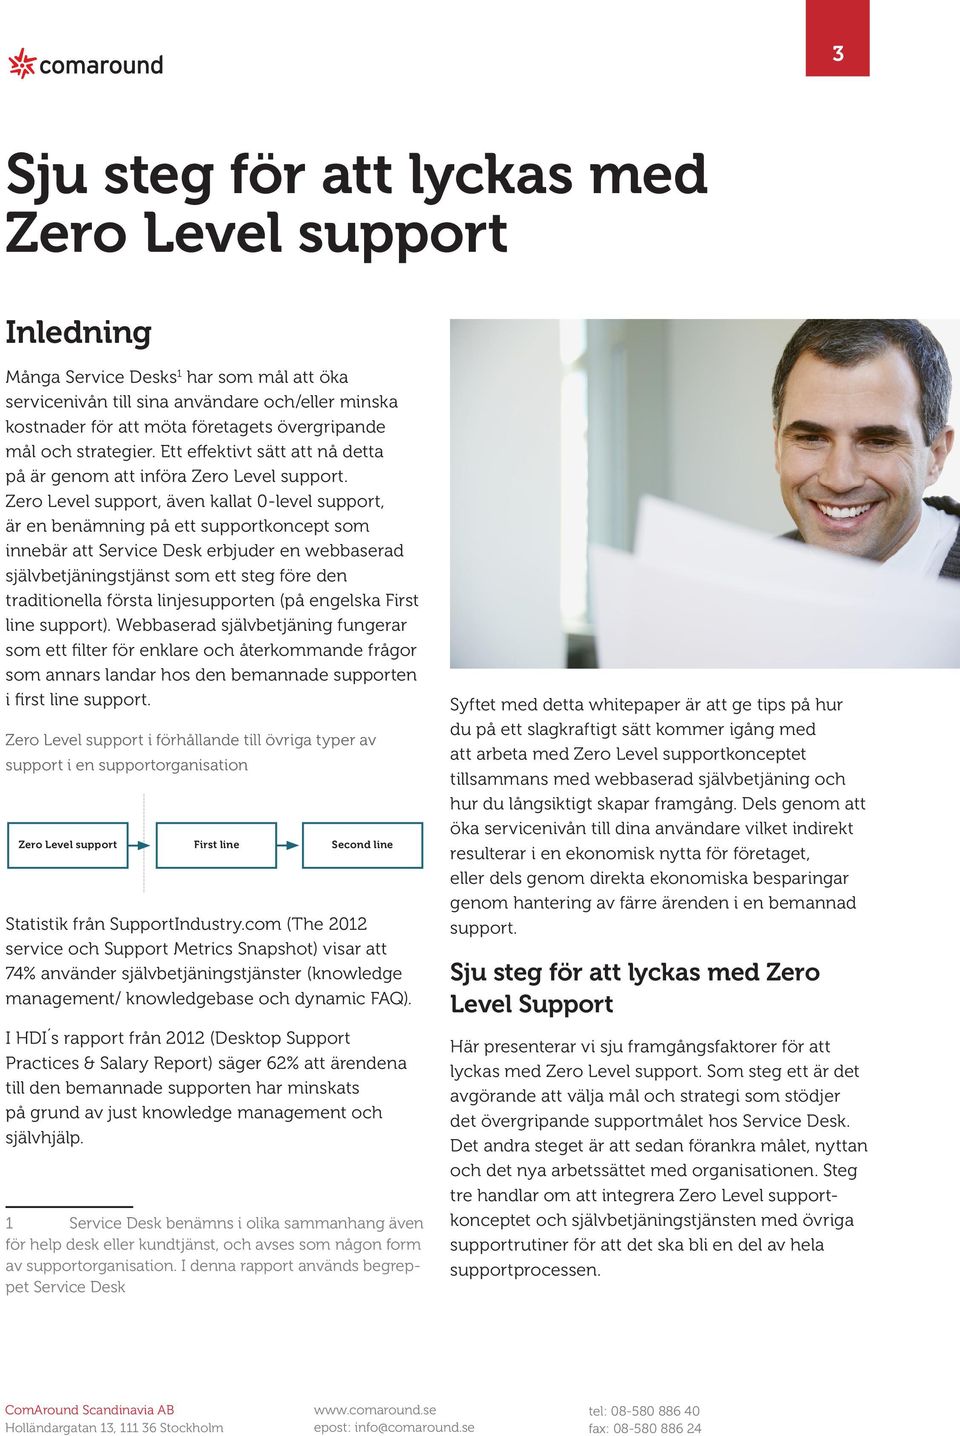 Zero Level support, även kallat 0-level support, är en benämning på ett supportkoncept som innebär att Service Desk erbjuder en webbaserad självbetjäningstjänst som ett steg före den traditionella